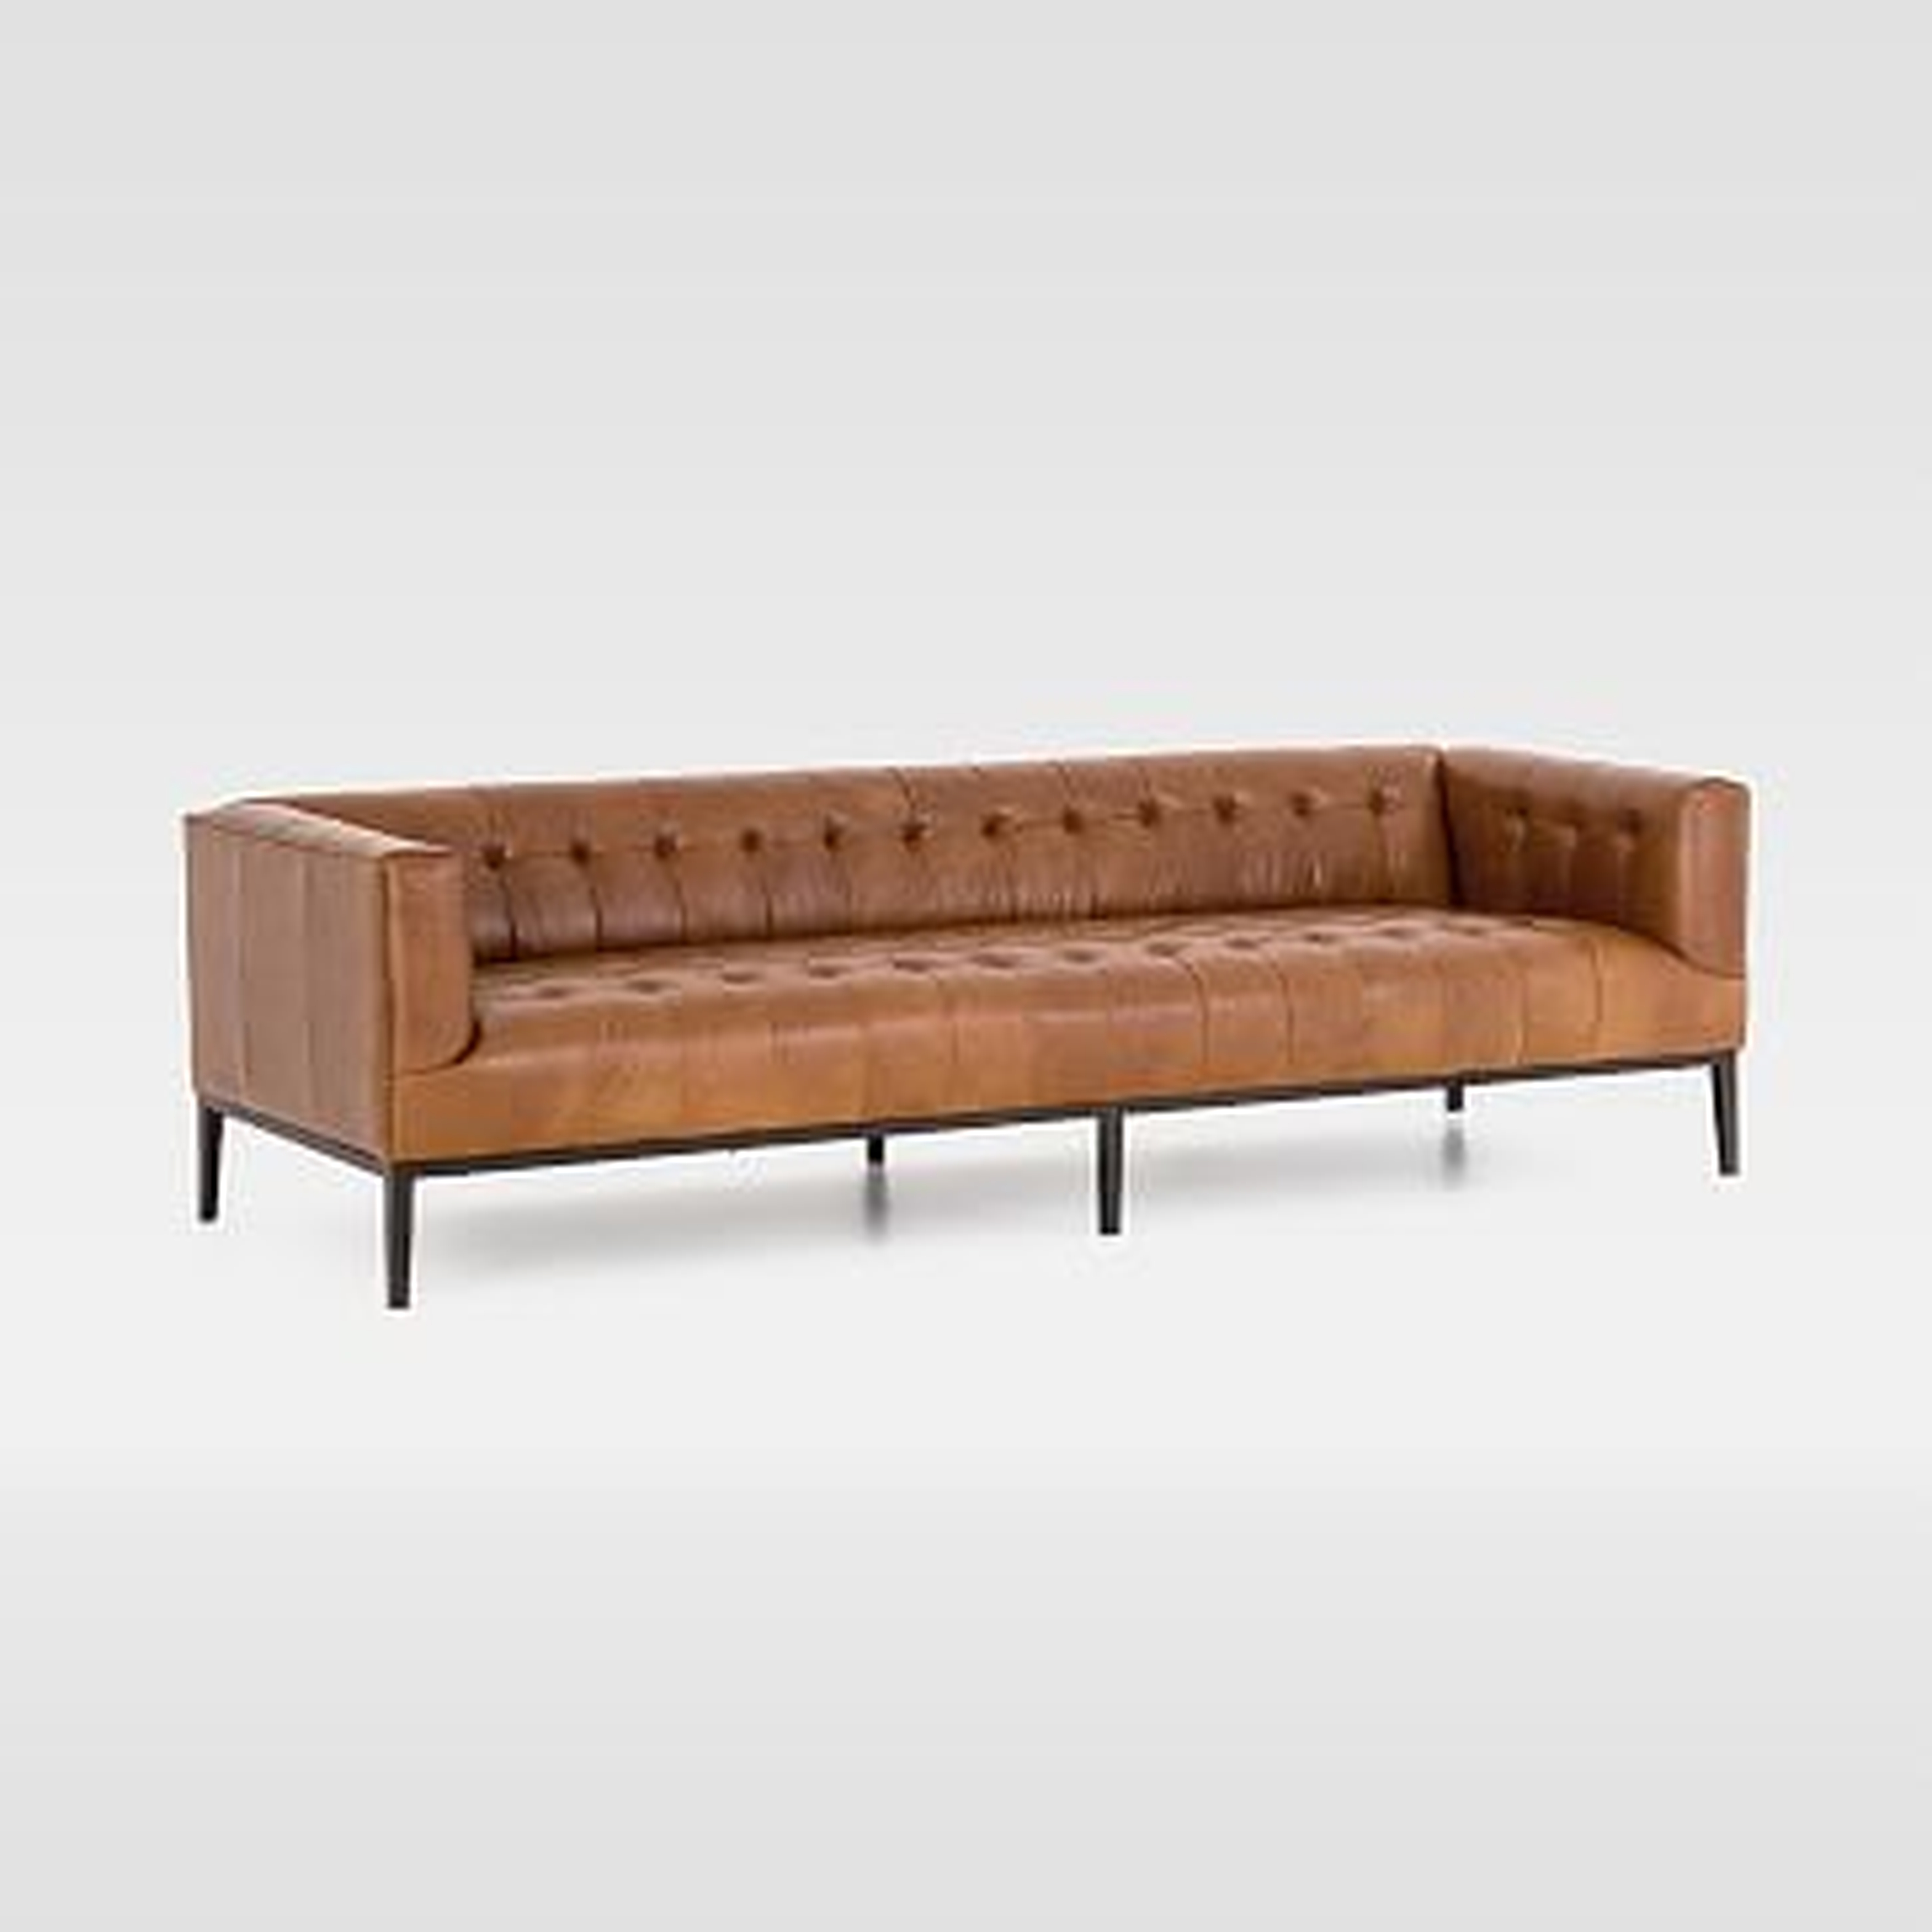 Iron Base Leather Sofa, 96" - West Elm